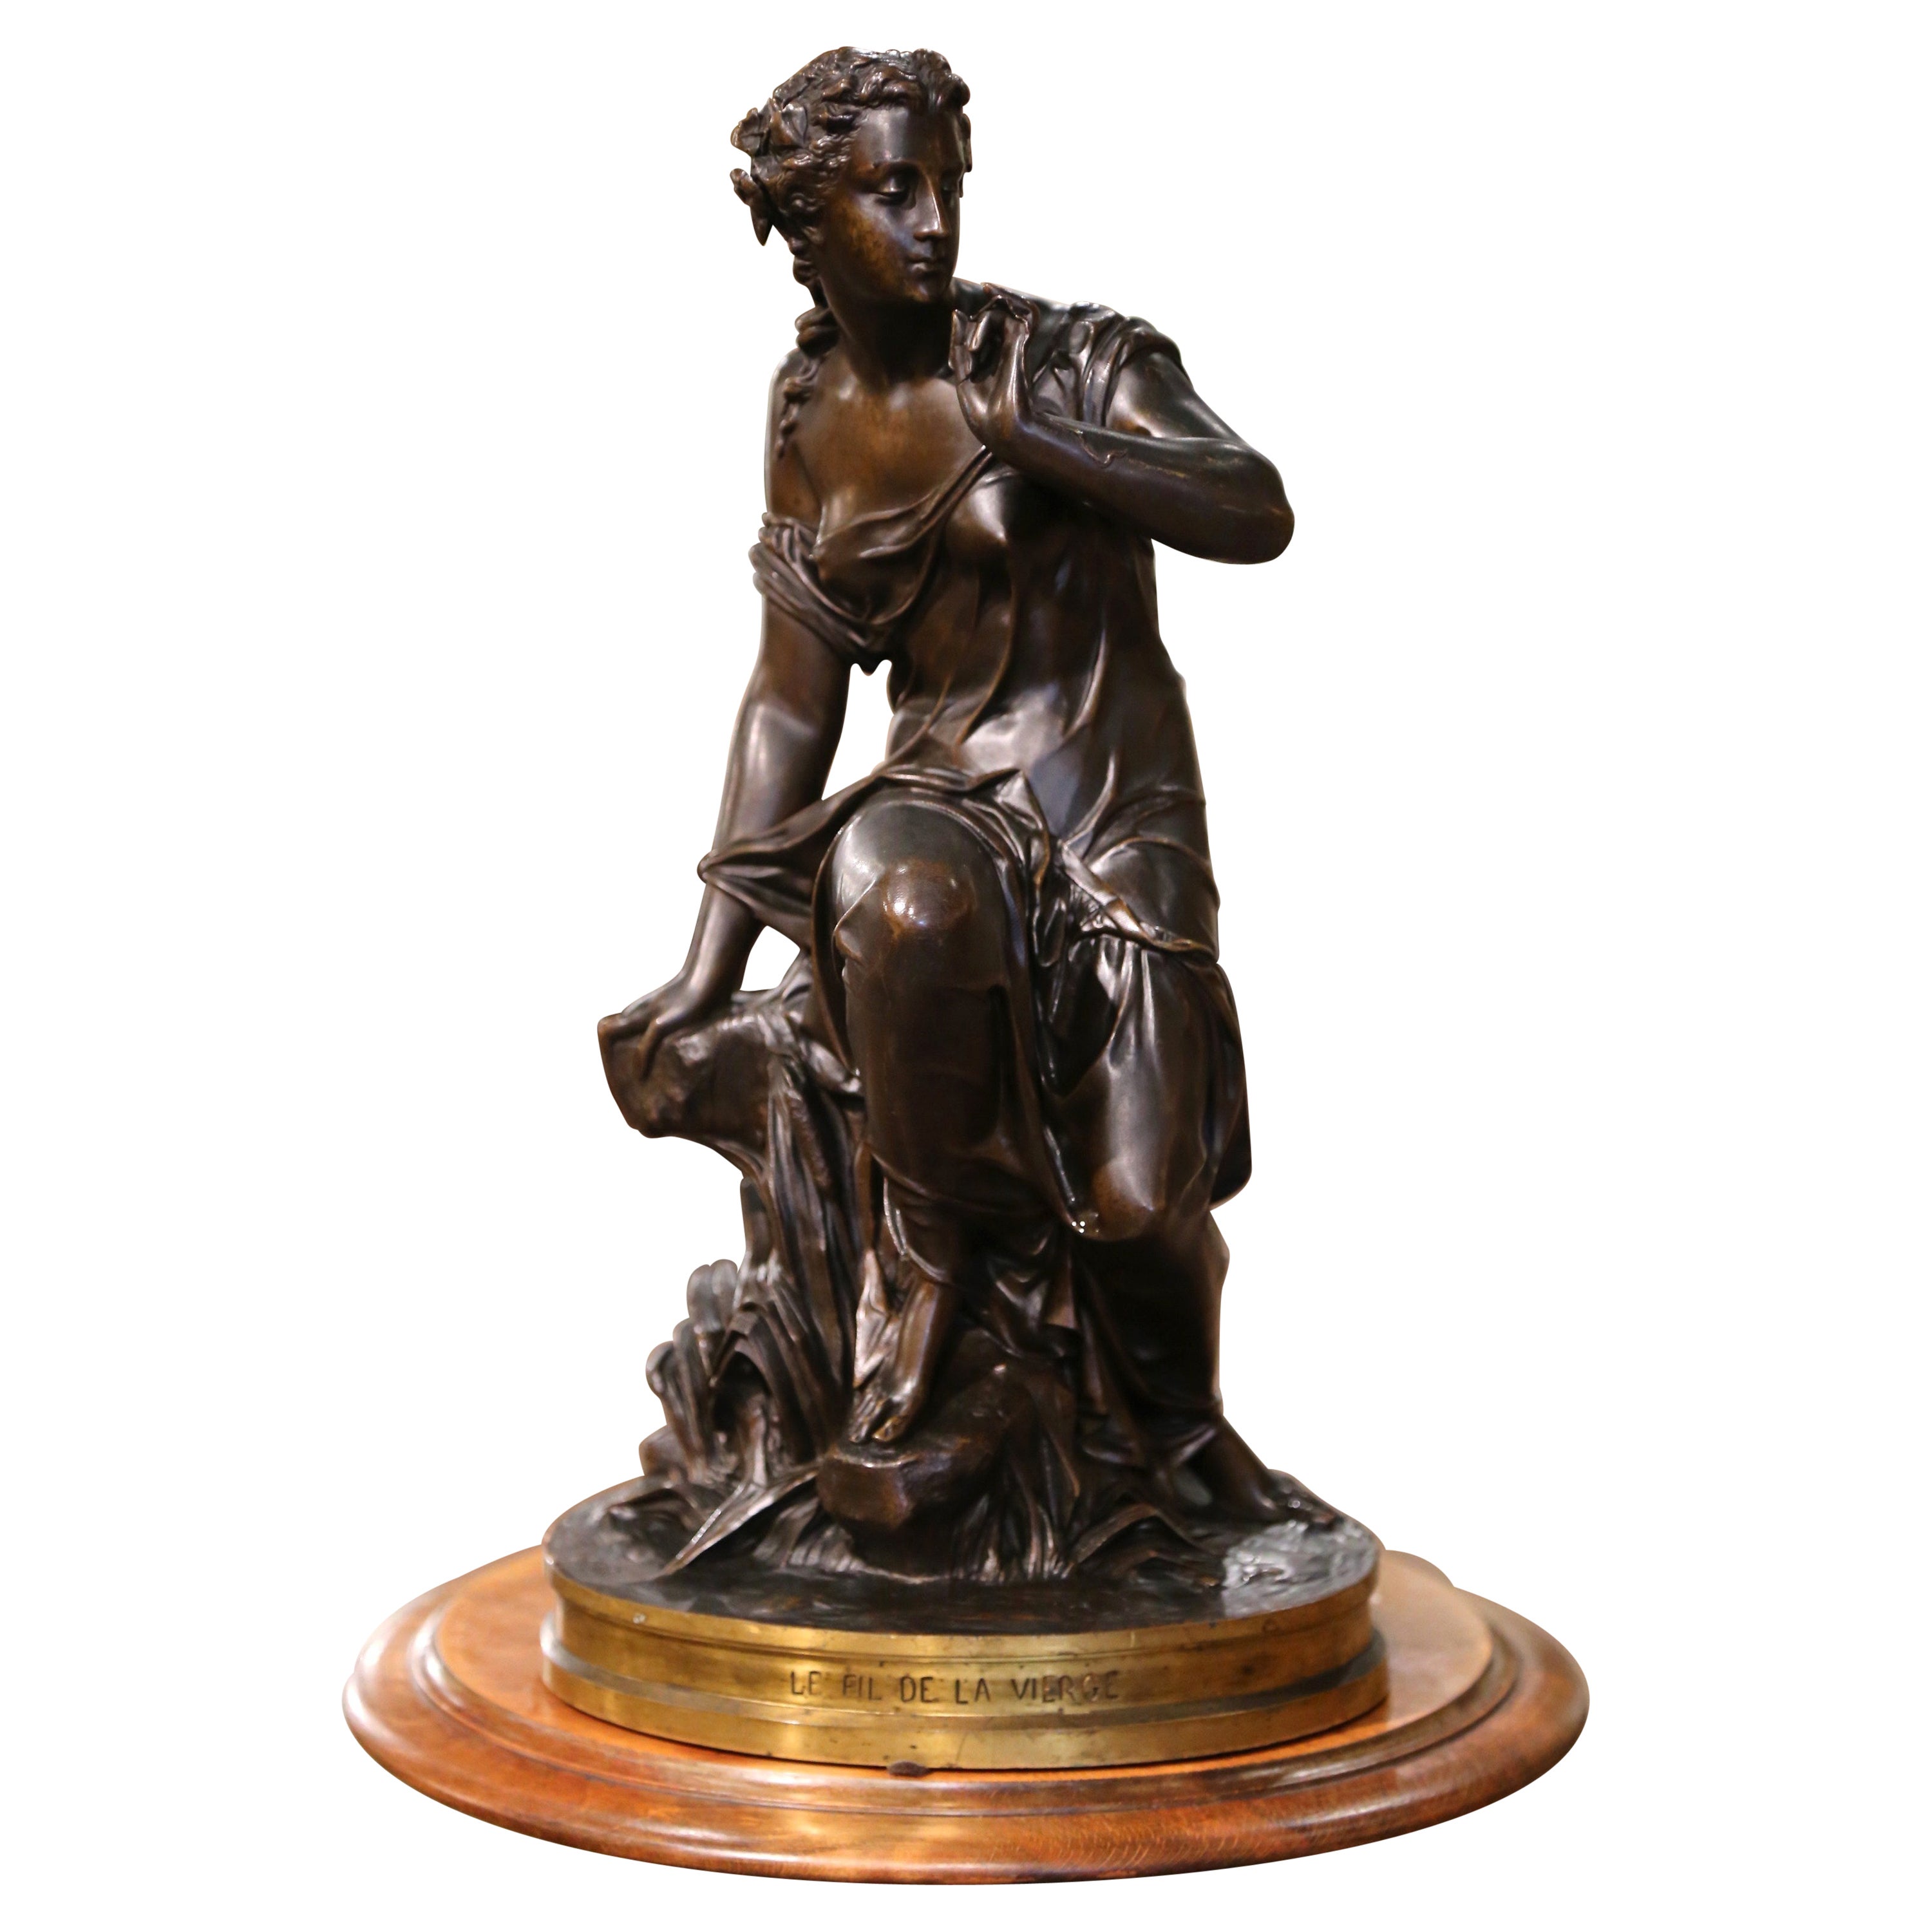 Figura in bronzo e dorato francese del XIX secolo "Le Fil de la Vierge" firmata A. Hebert in vendita